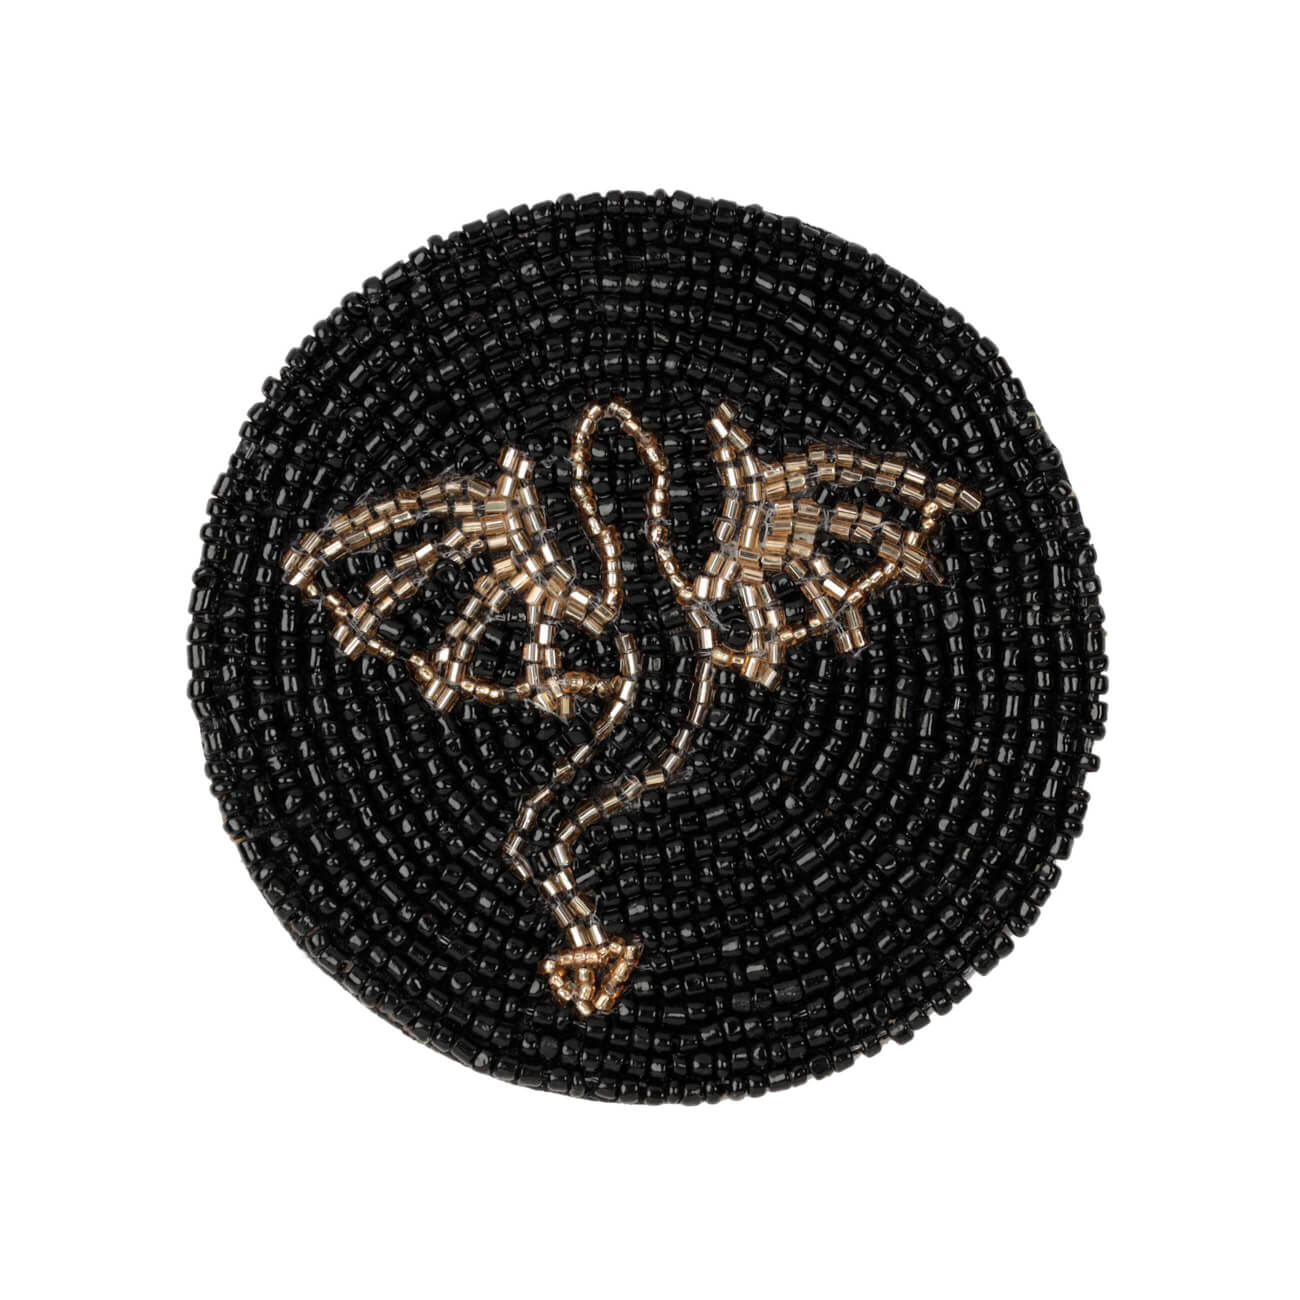 Подставка под кружку, 10 см, бисер, круглая, черная, Дракон, Art beads подставка под кружку 10 см 2 шт бисер круглая серебристая shiny beads